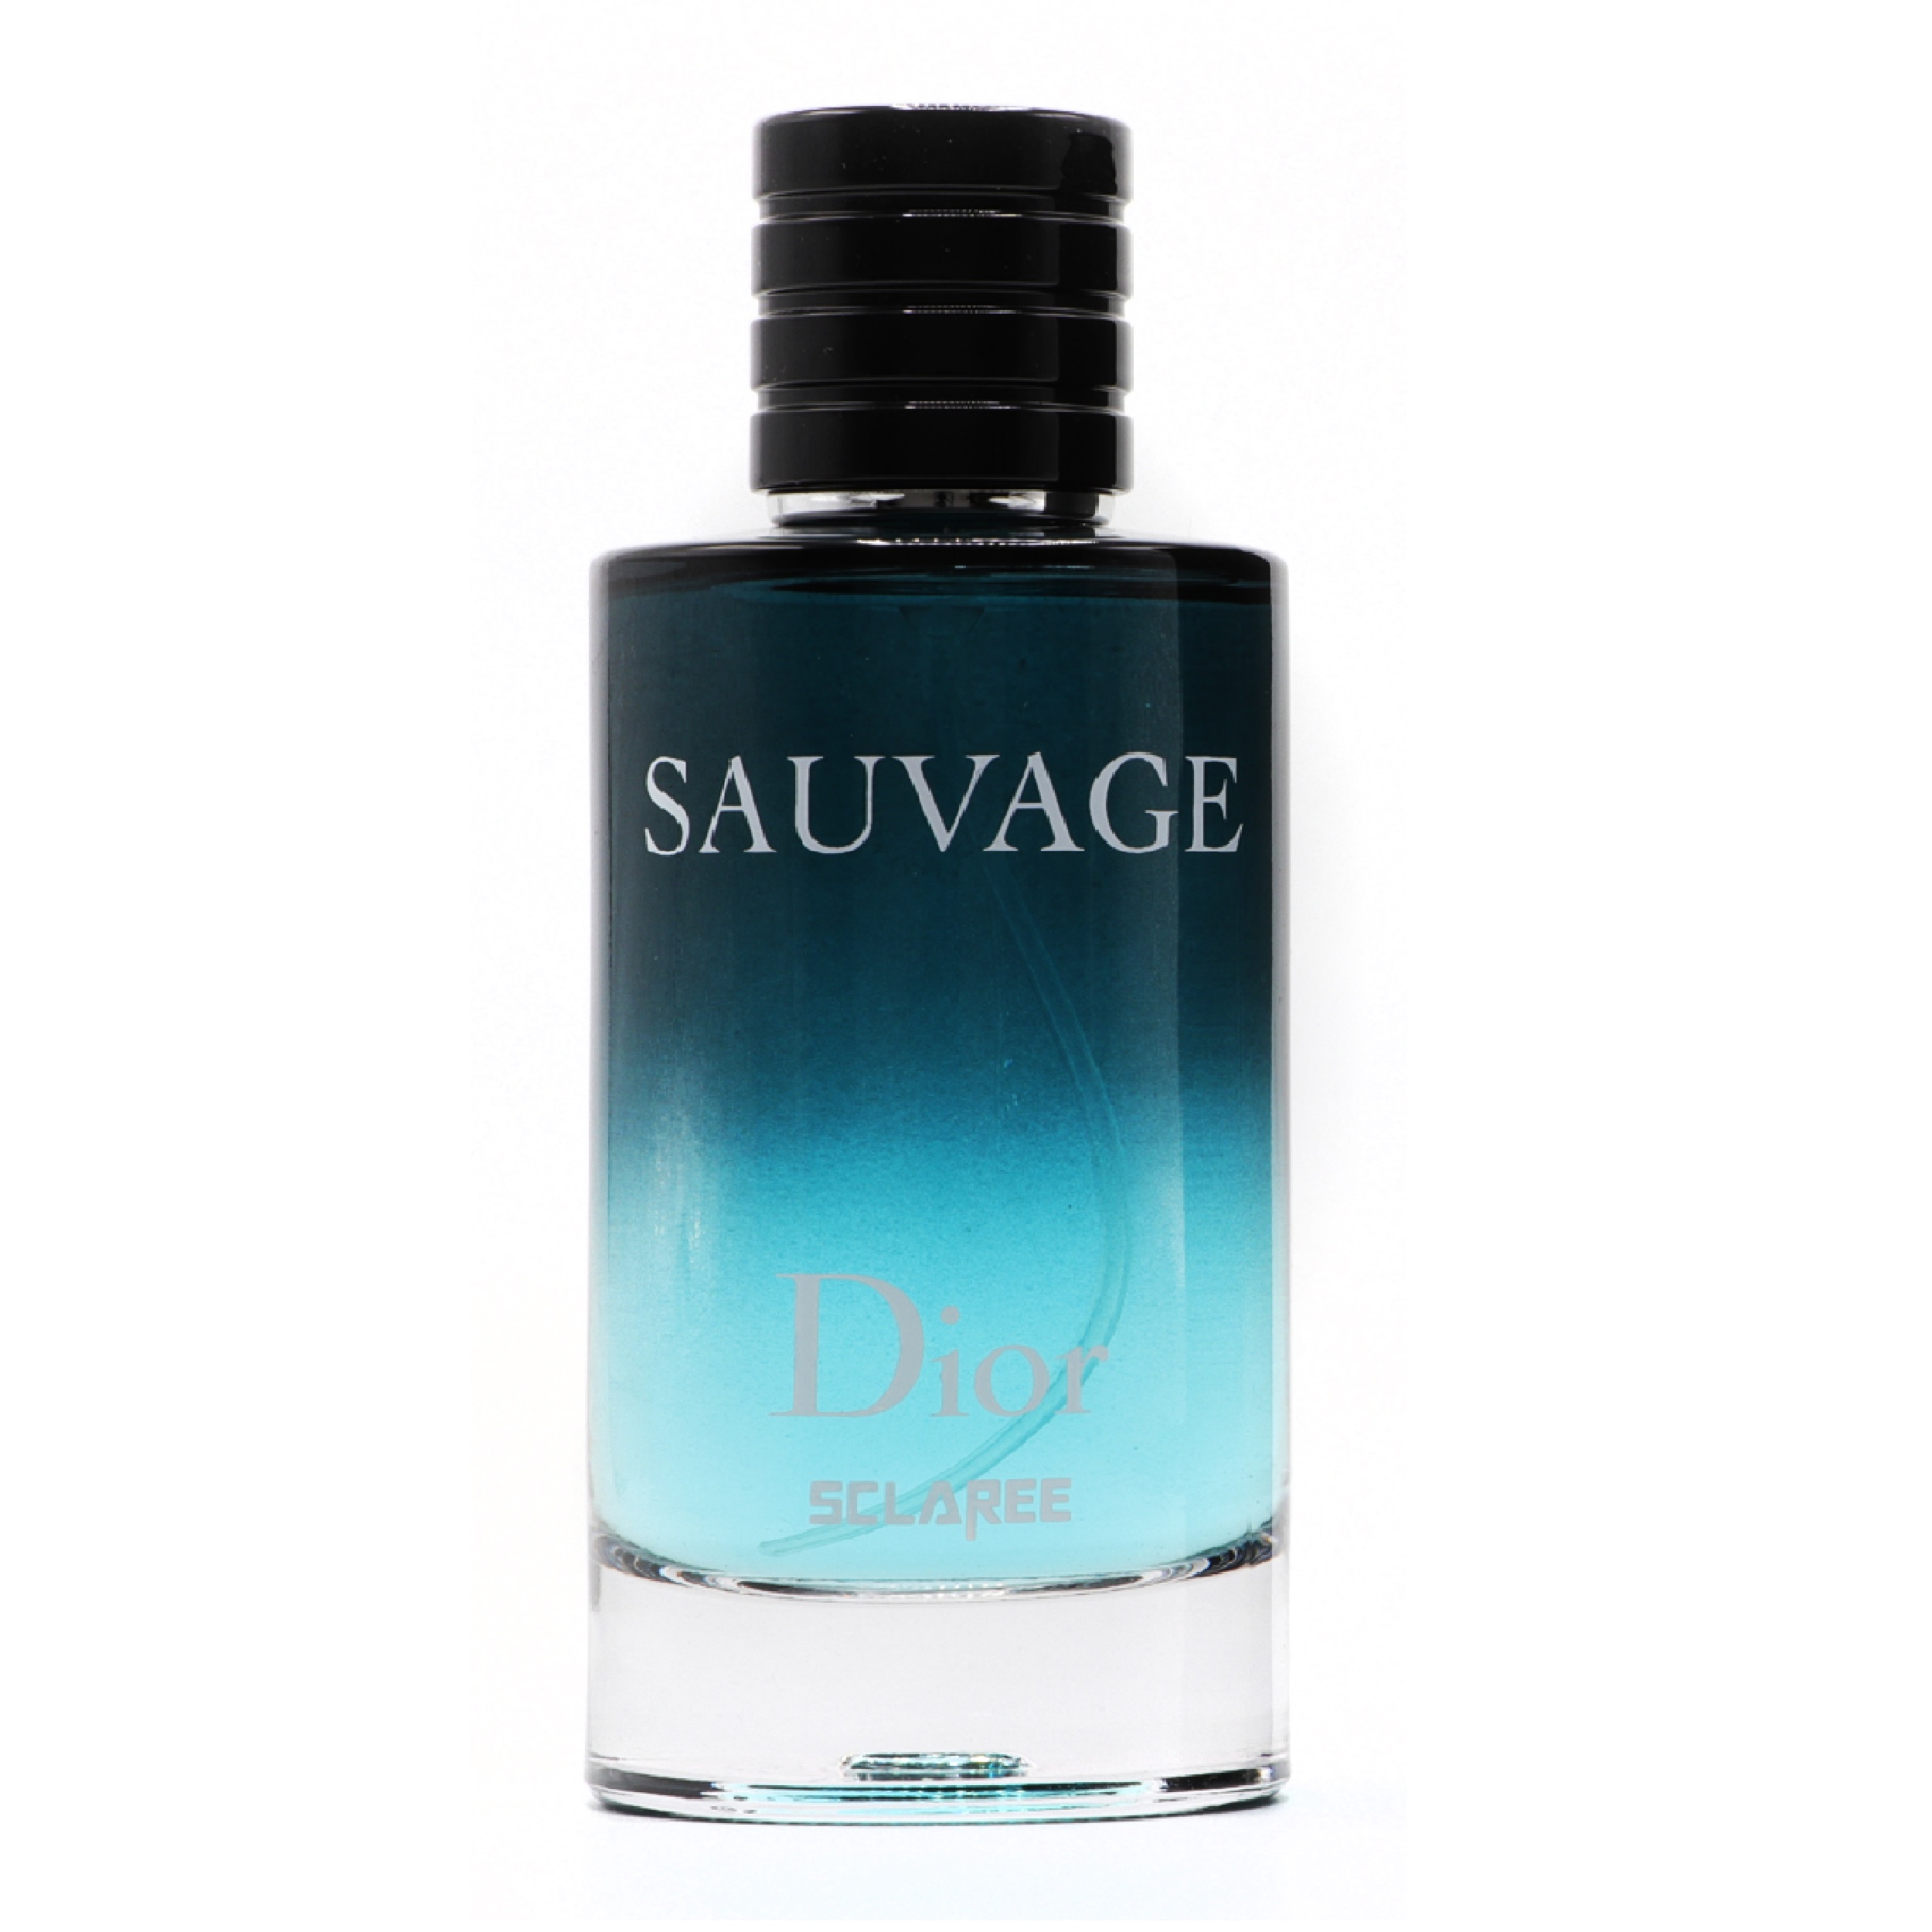 ادکلن ساواج دیور مردانه   Sauvage Dior   قیمت امروز 31 تیر  درینعطر  ادکلن درین عطر